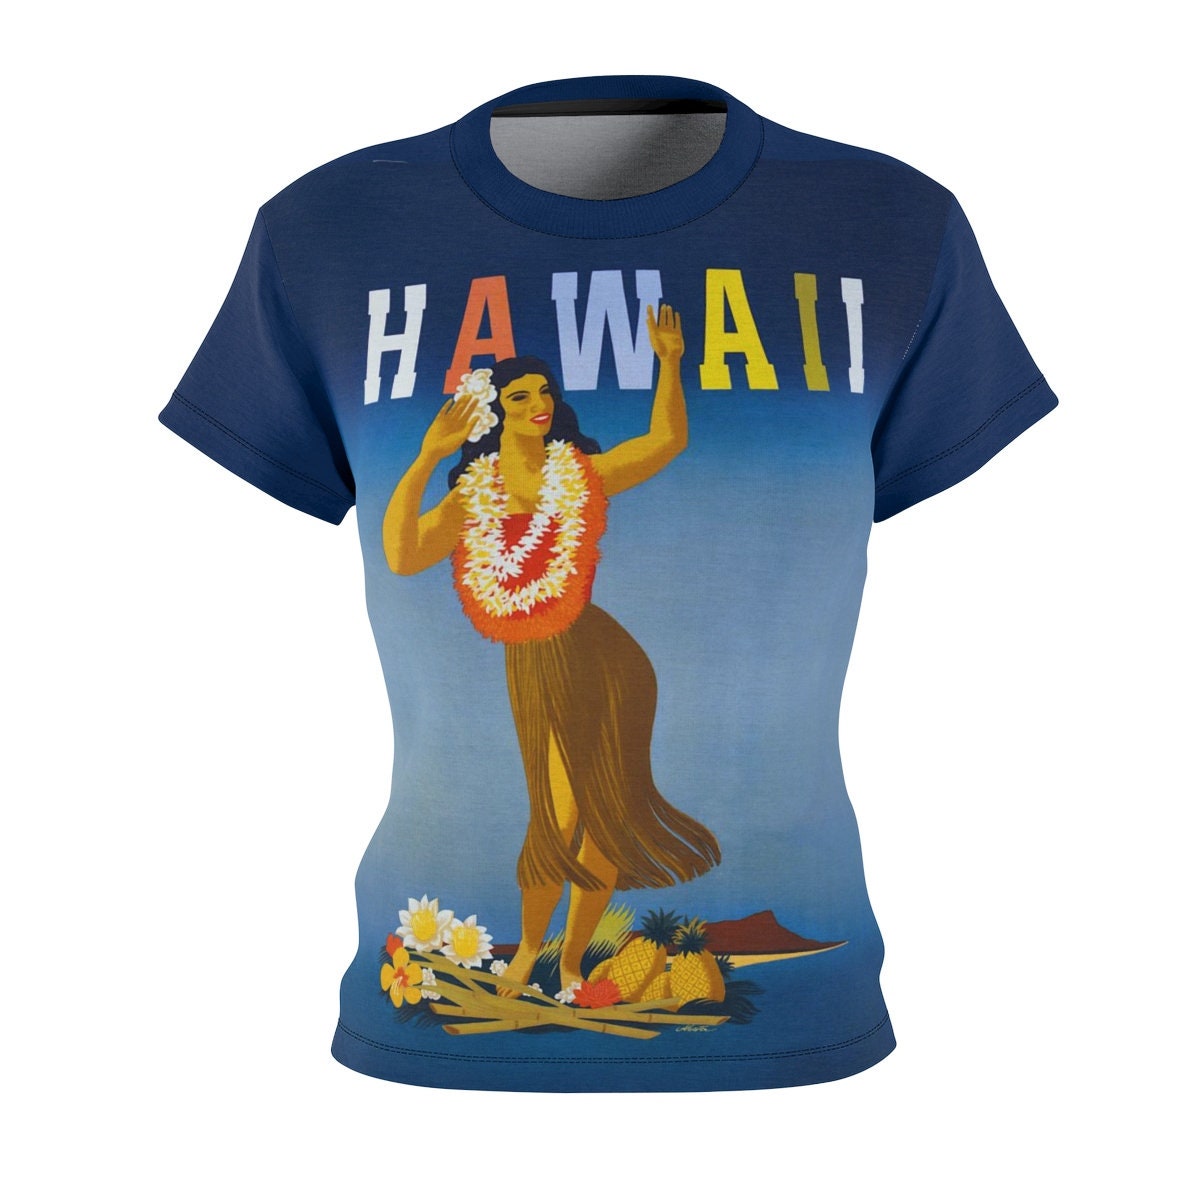 Tee Shirt /Hawaii /Women /Travel /T-shirt /Tee /Shirt /Vintage /Art /Poster /Birthday Gift /Clothing /Gift for Her - Chloe Lambertin